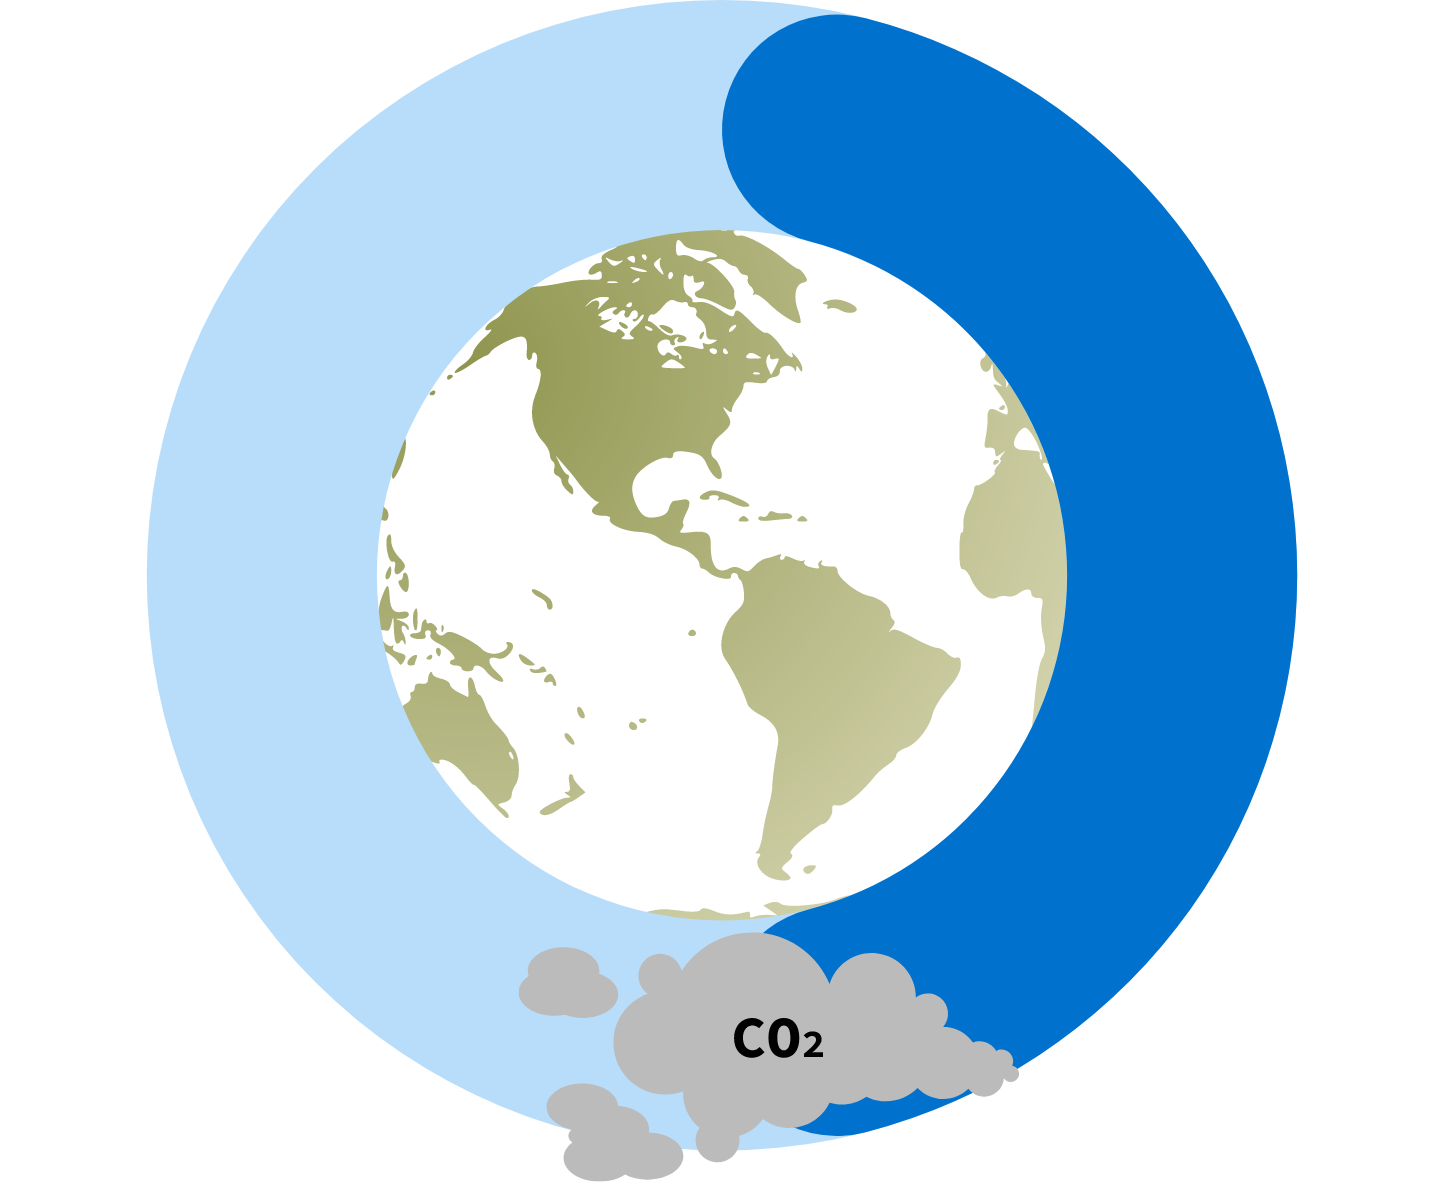 Libanon har 4,80 tonn CO2-utslipp per innbygger.